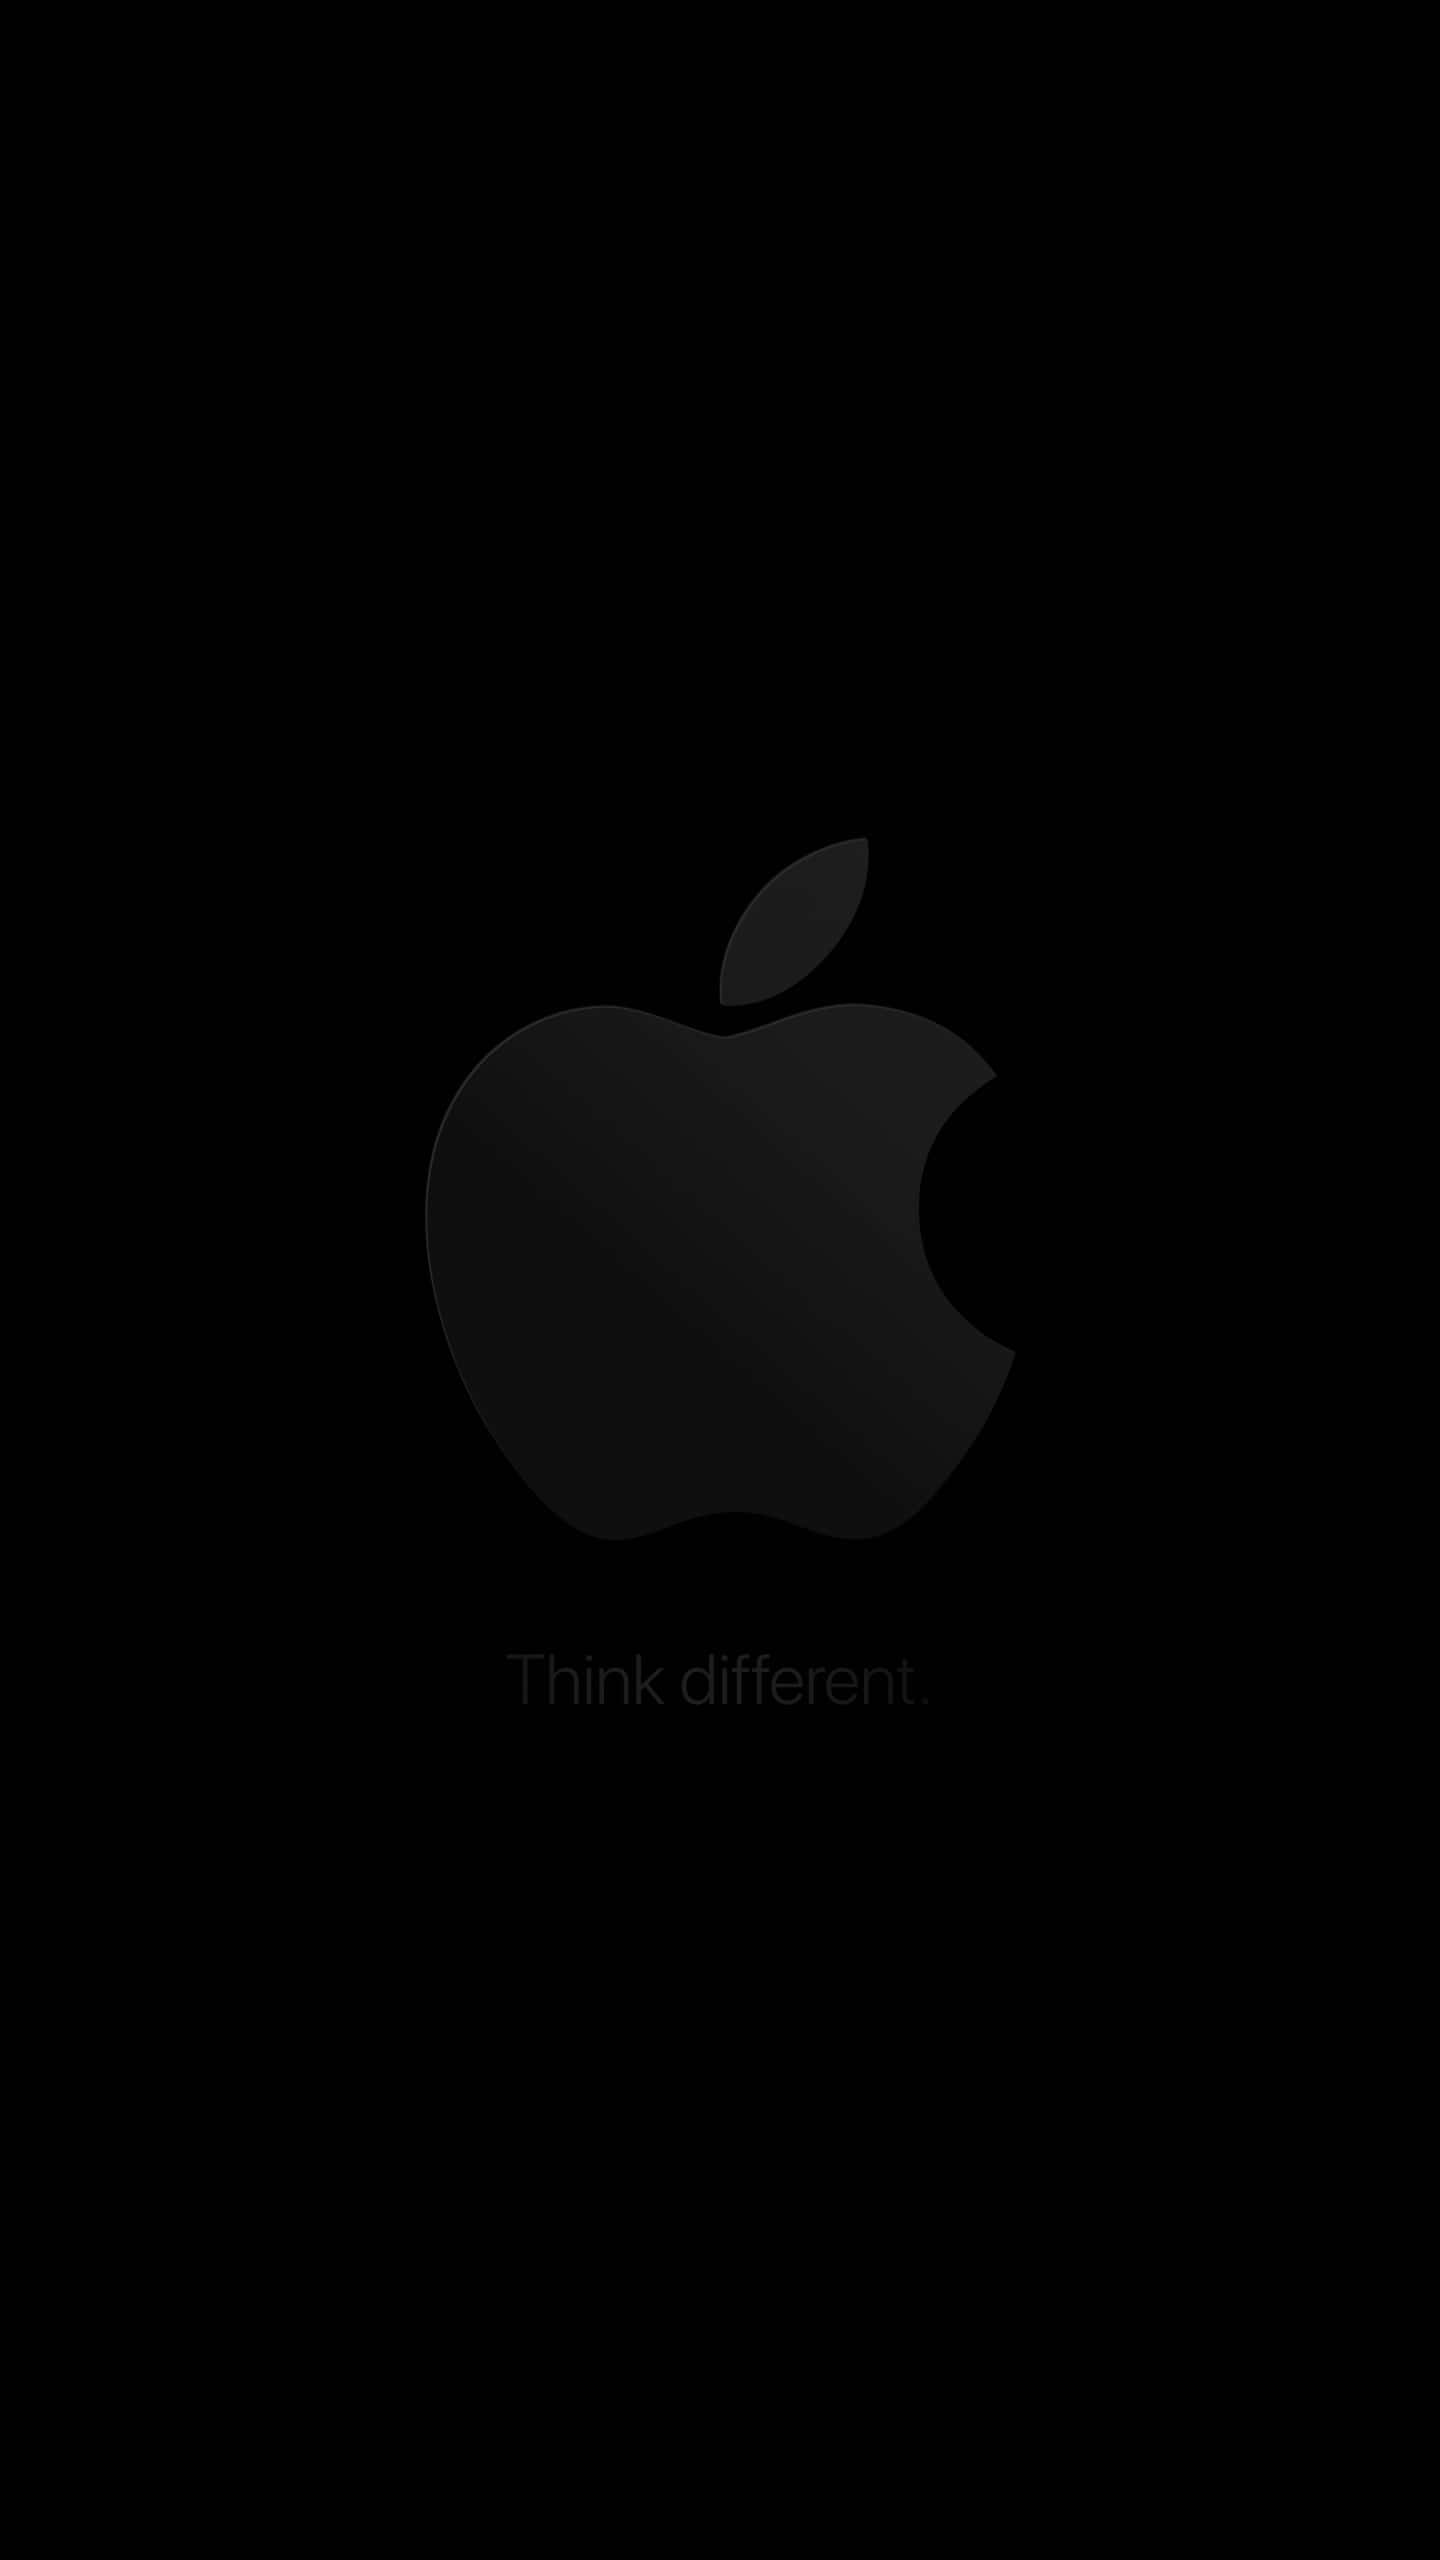 Modern Apple Logo Wallpaper